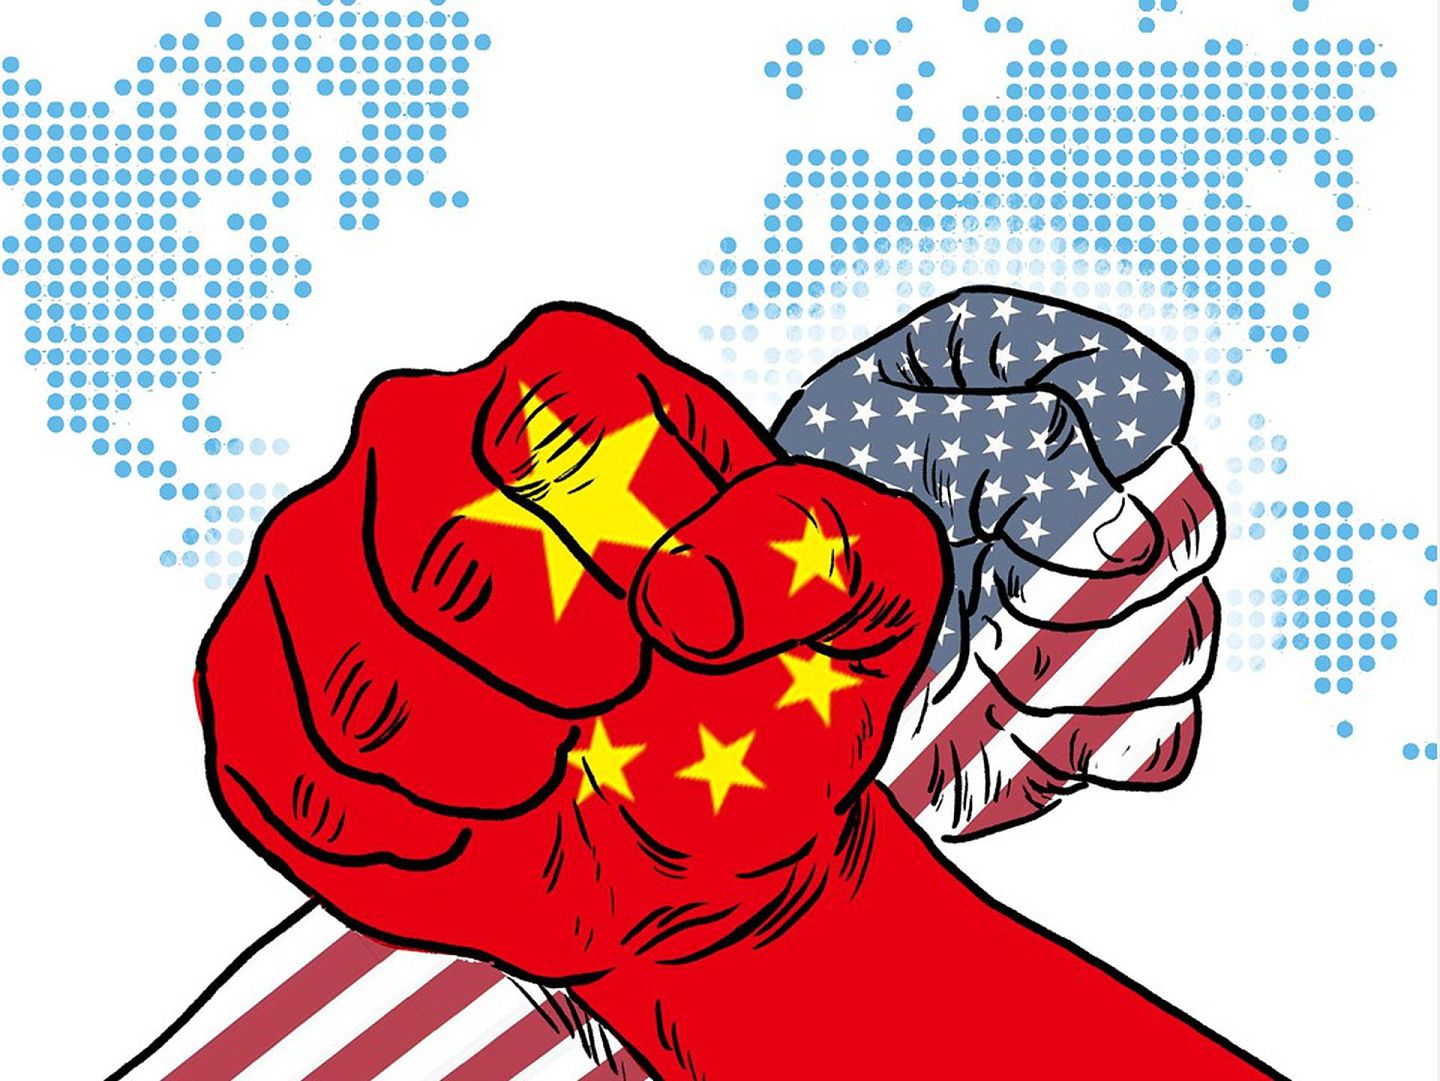 《出口管制法》立法的完成为中国反制美国的贸易摩擦提供了更多的制度工具。（视觉中国）